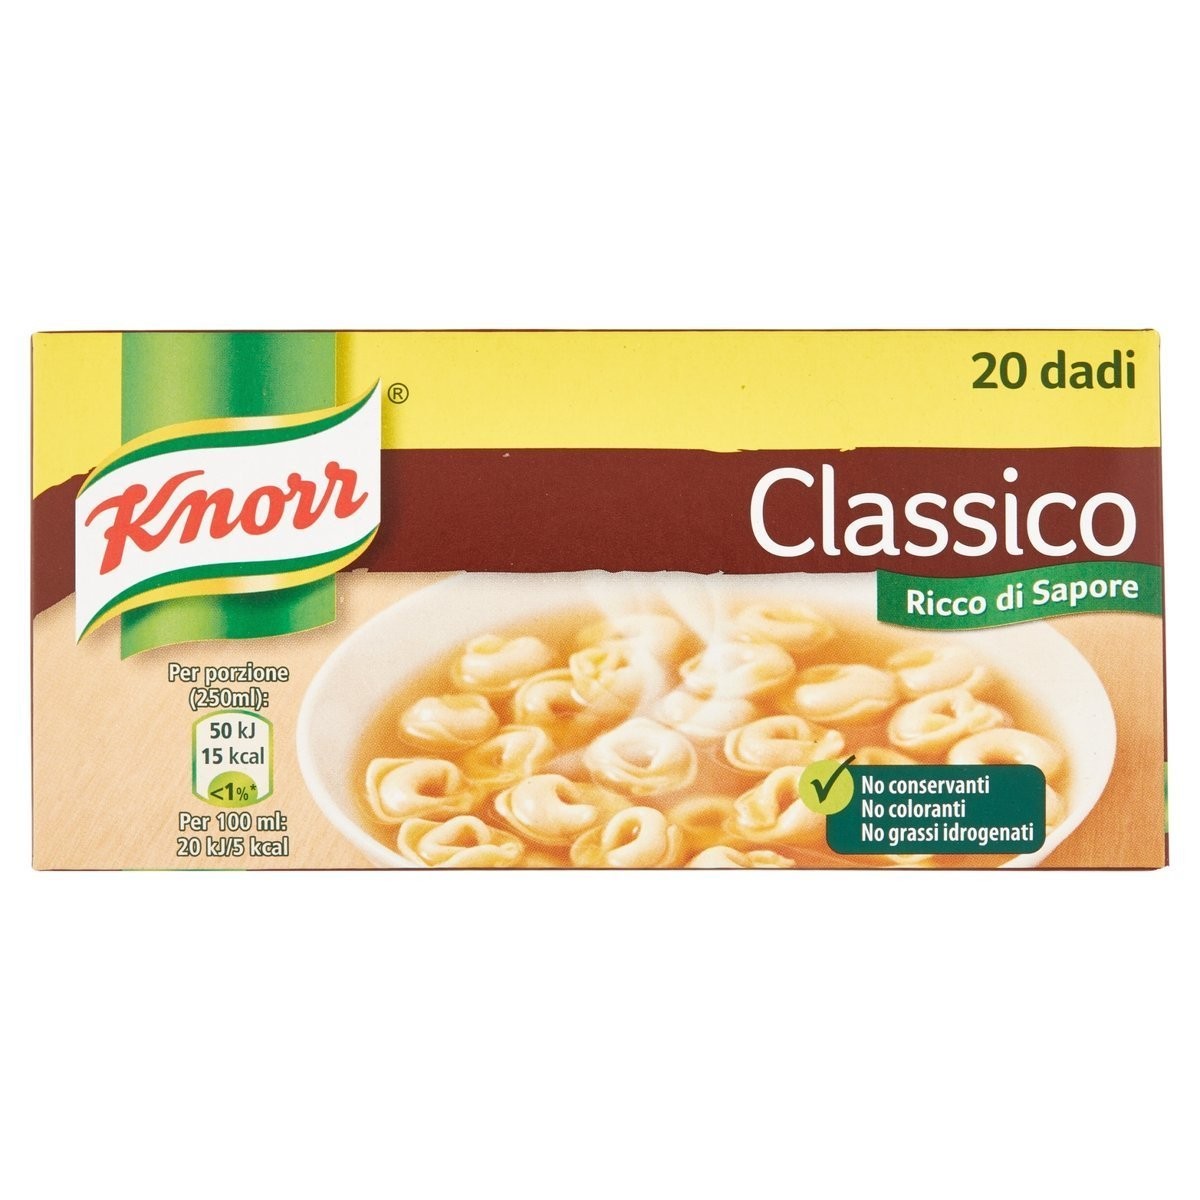 Knorr Dado classico